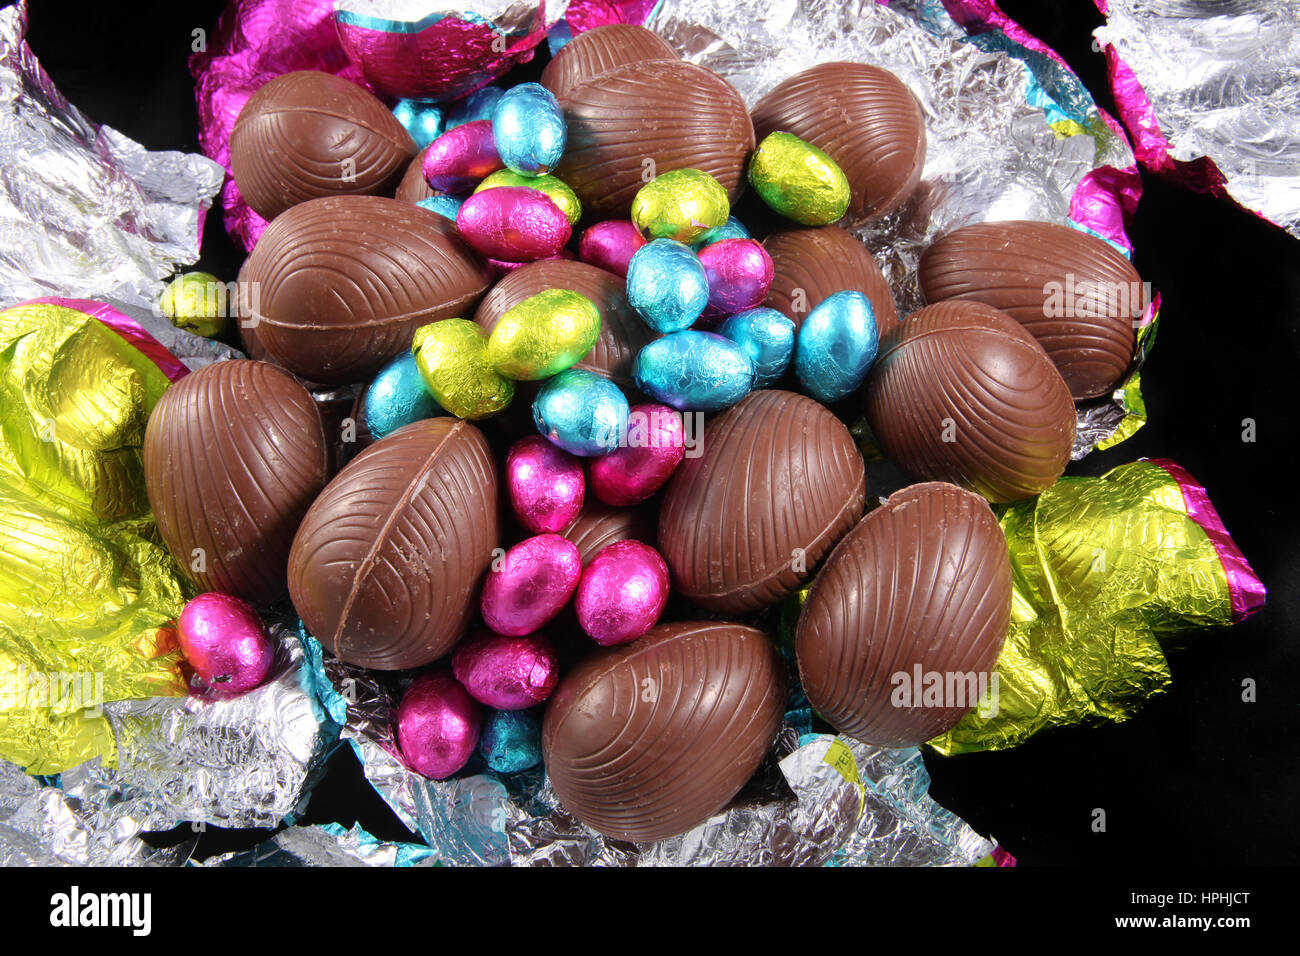 Haufen von unverpackten Schokoladeneier mit bunter Folie wickeln rund um es auf einem schwarzen Hintergrund. Stockfoto